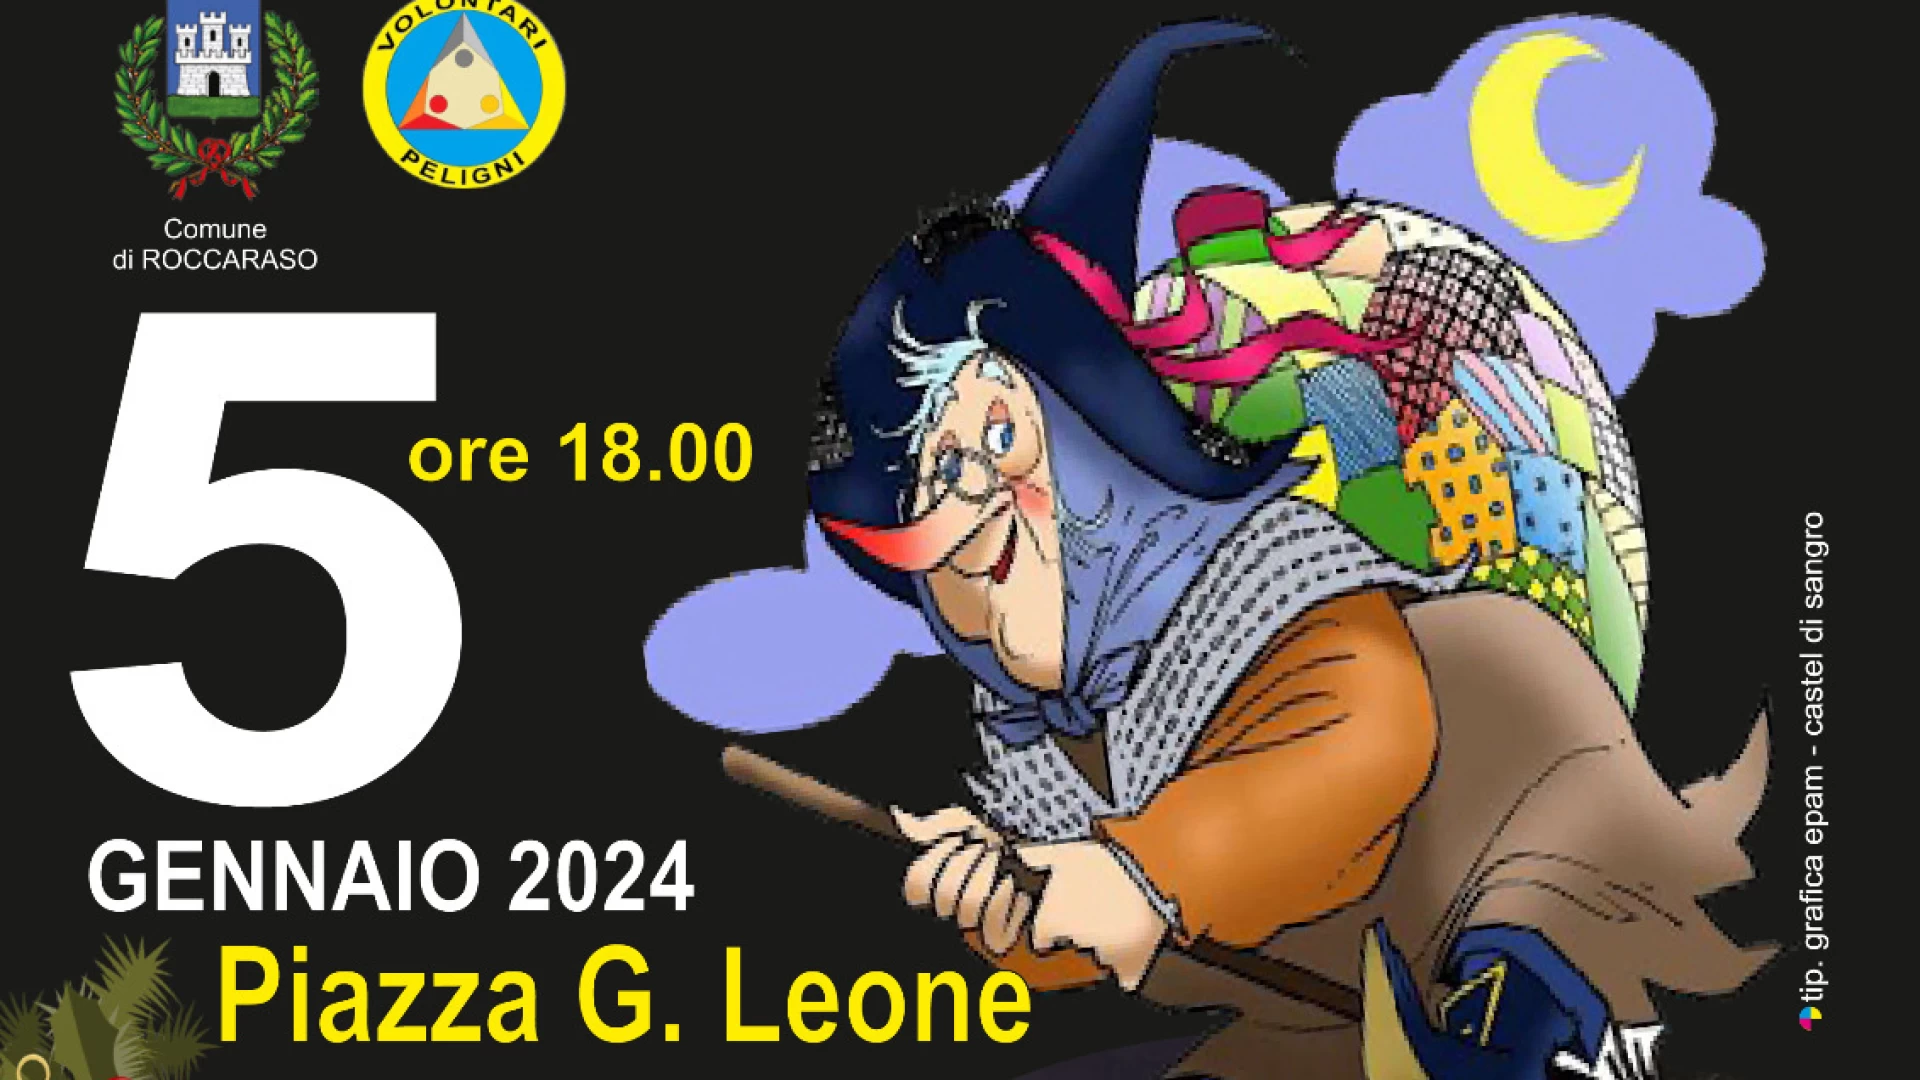 Roccaraso: venerdì 5 gennaio in piazza Leone “Arriva la Befana”.